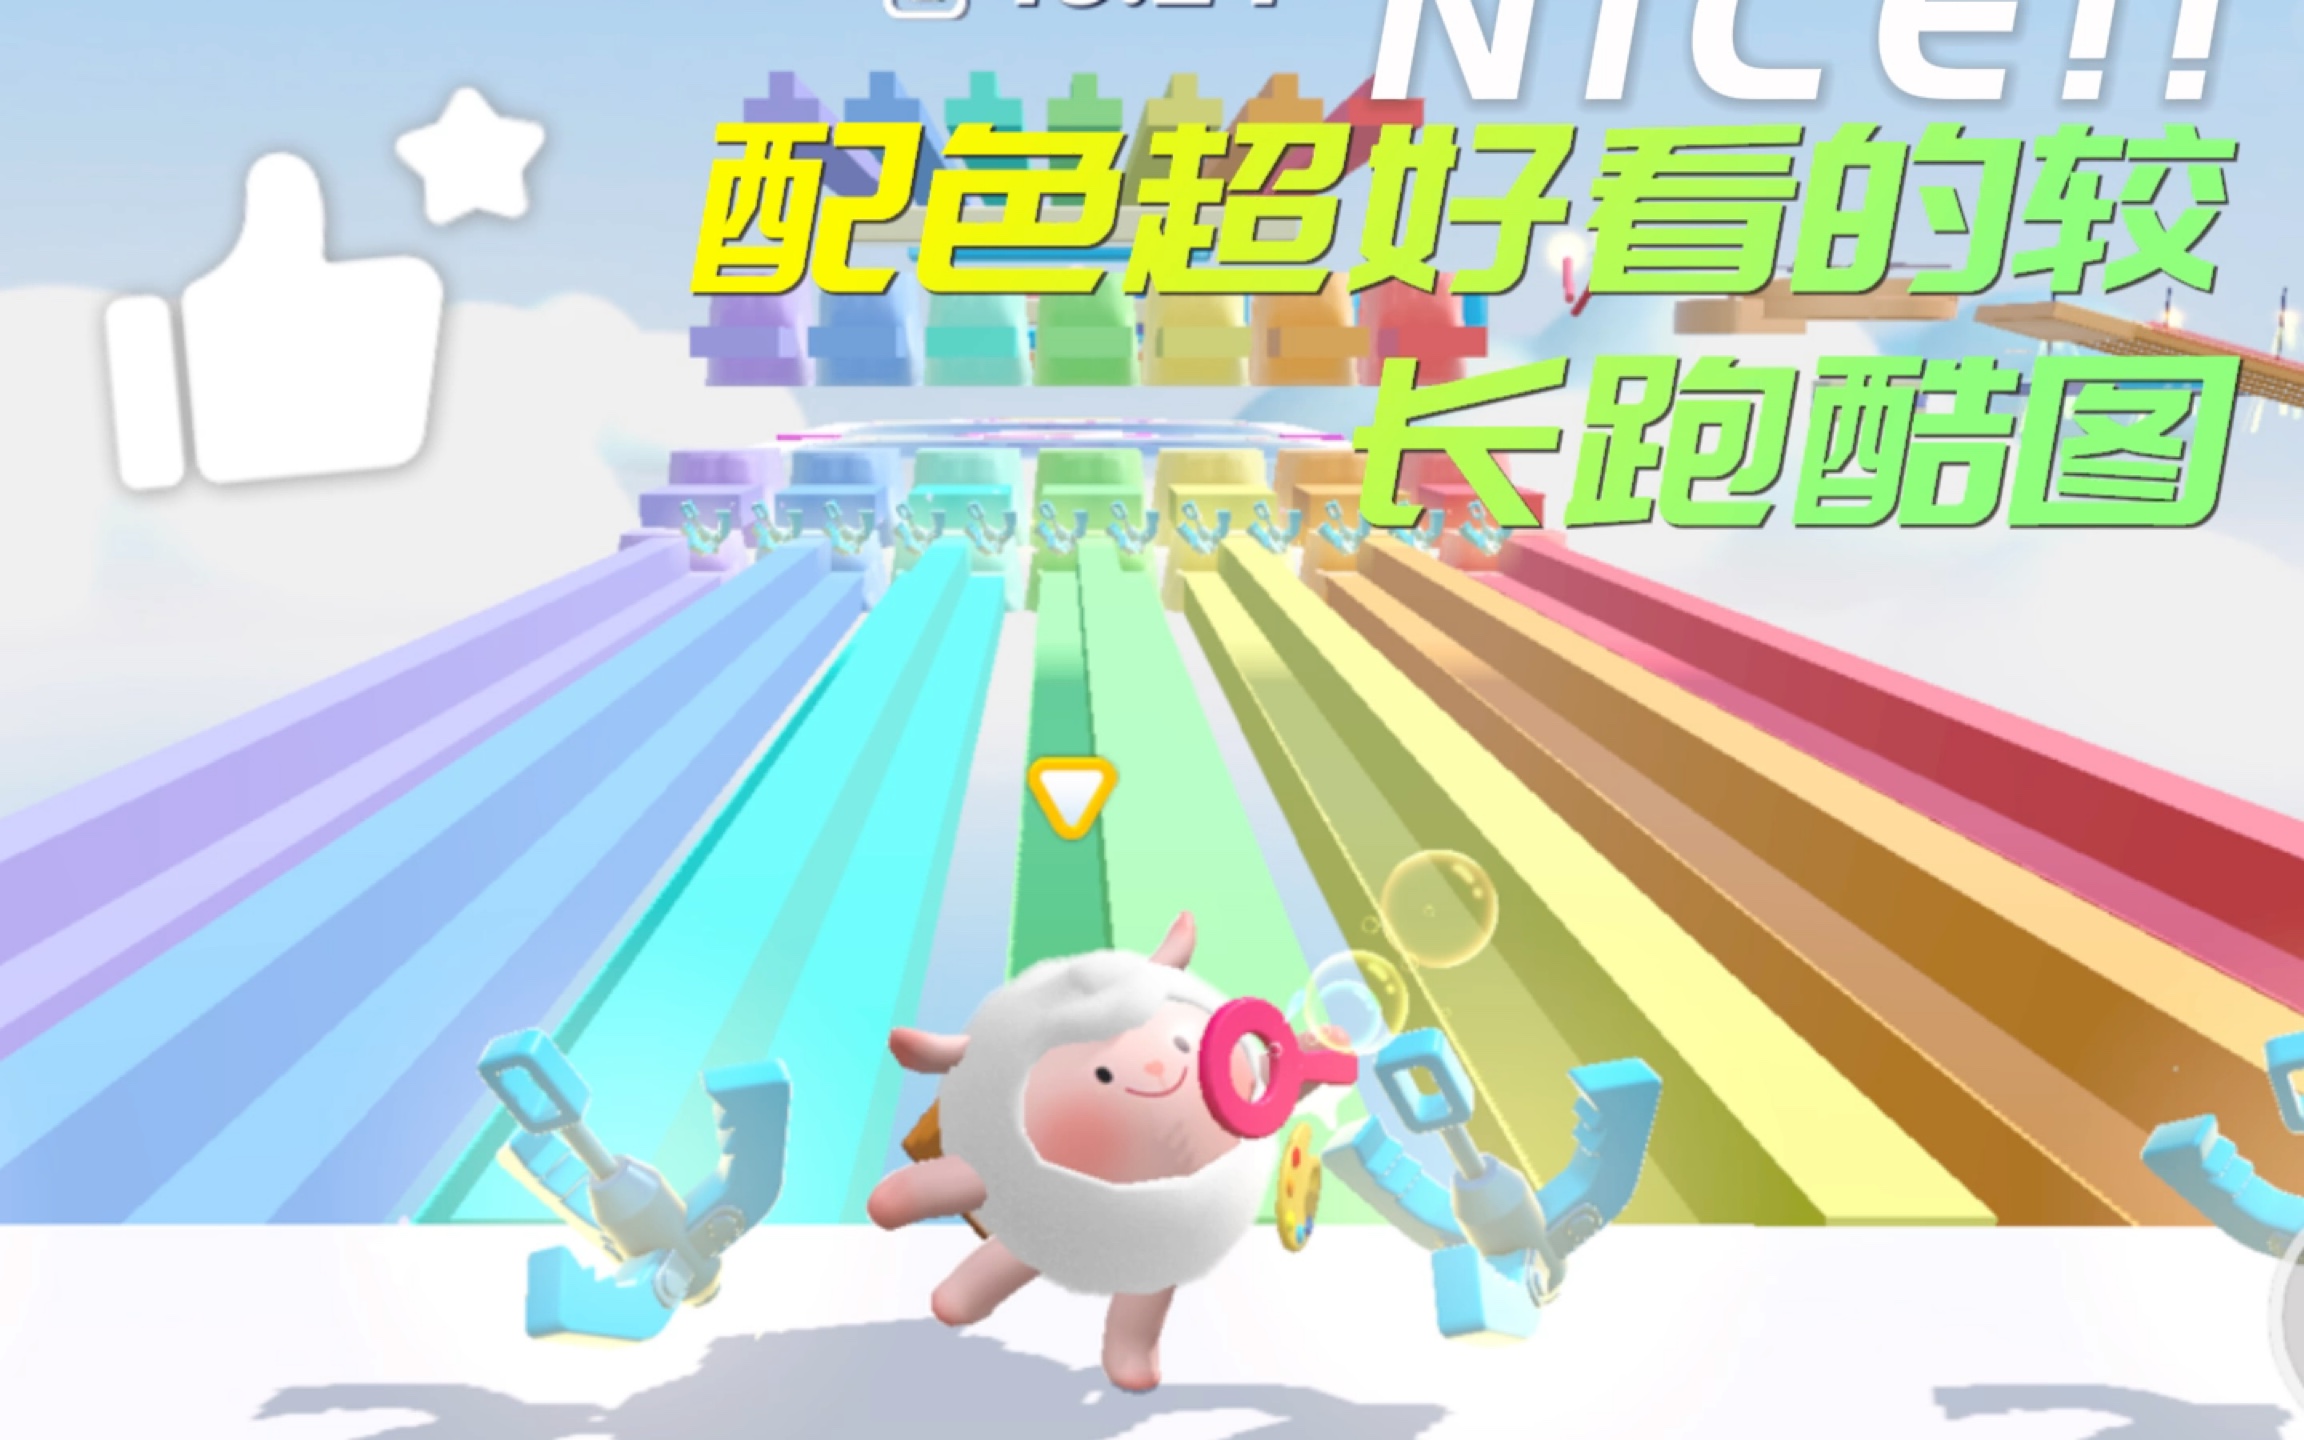 扭蛋机是什么 怎么玩_扭蛋机_广州市东之宇动漫科技有限公司